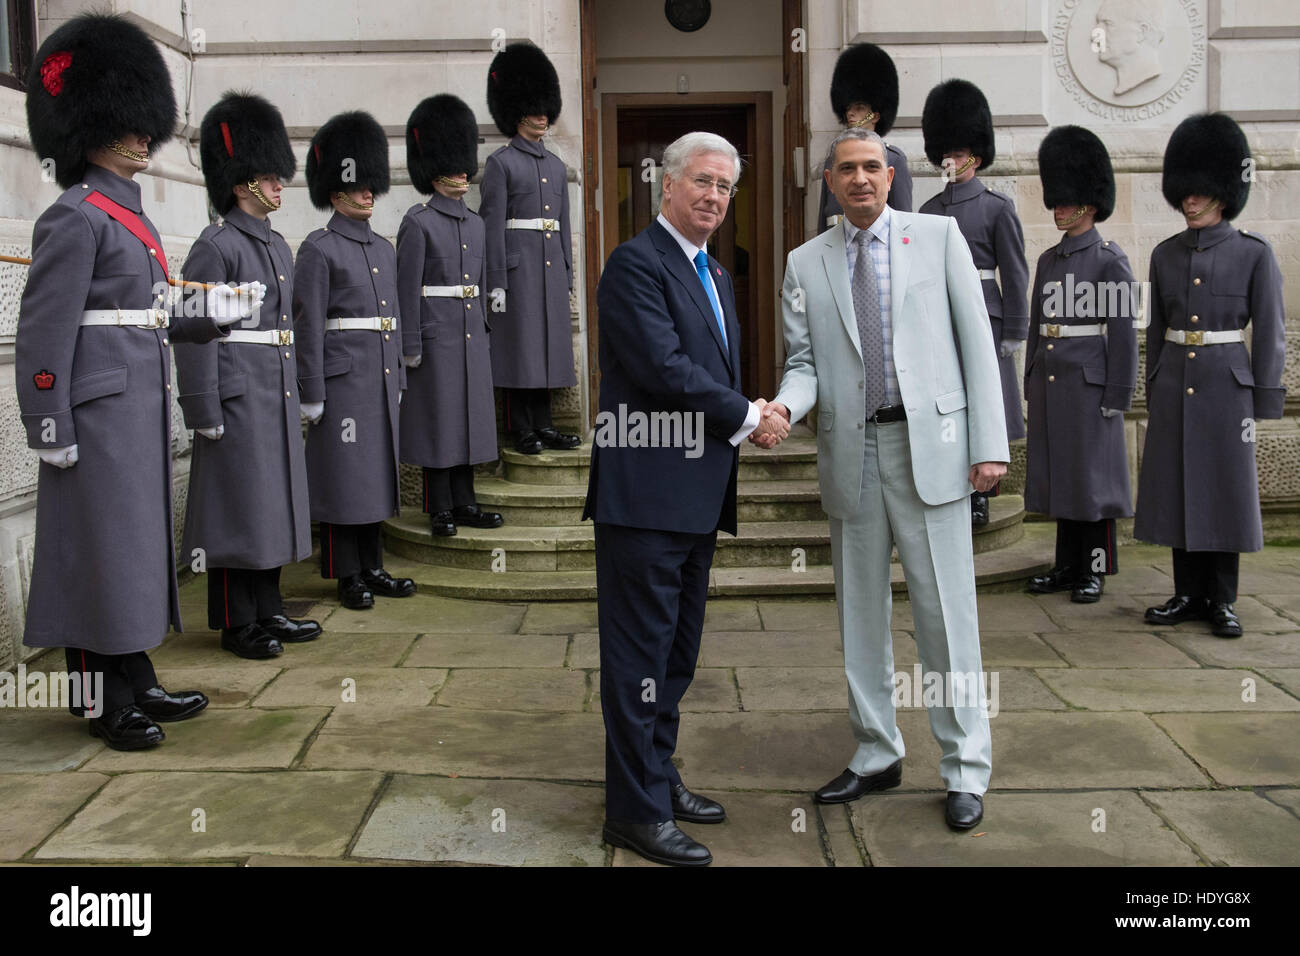 Le Secrétaire à la défense, Sir Michael Fallon (à gauche) accueille l'Général Othman Al-Ghanim en dehors de l'Office des étrangers avant d'un sommet à Londres avec les ministres de la défense de la coalition des pays qui se battent, est également connu comme Daesh, en Iraq et en Syrie. Banque D'Images